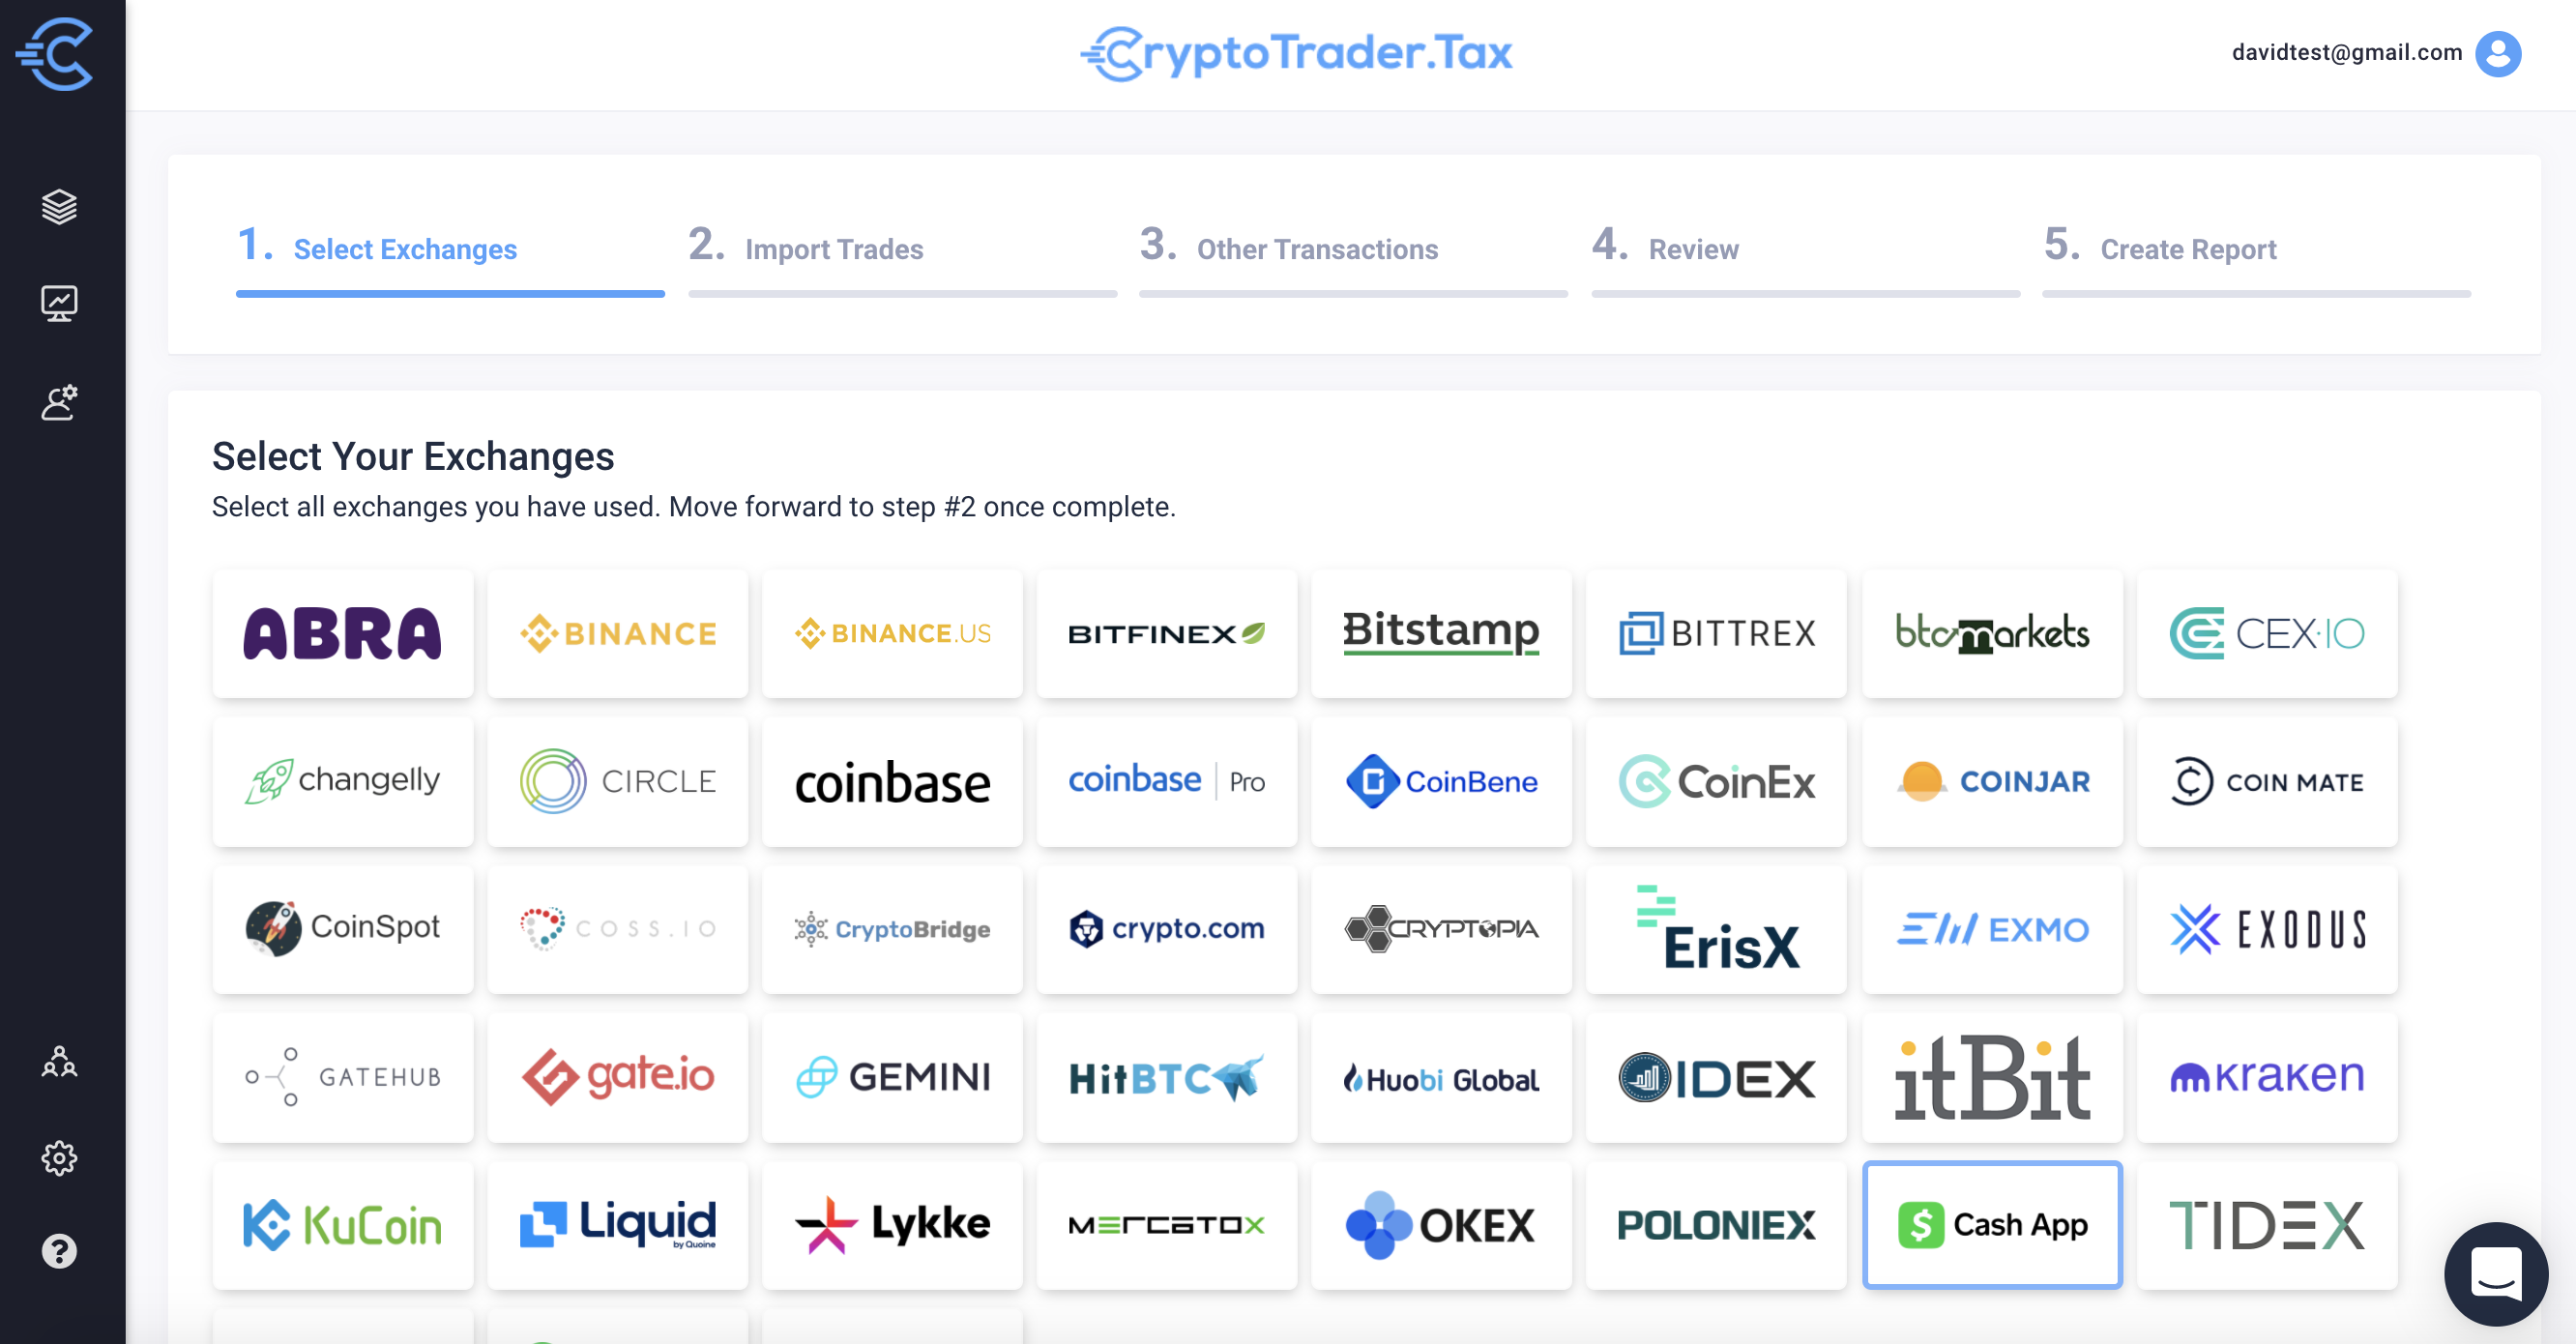 CryptoTrader.Tax Cash App